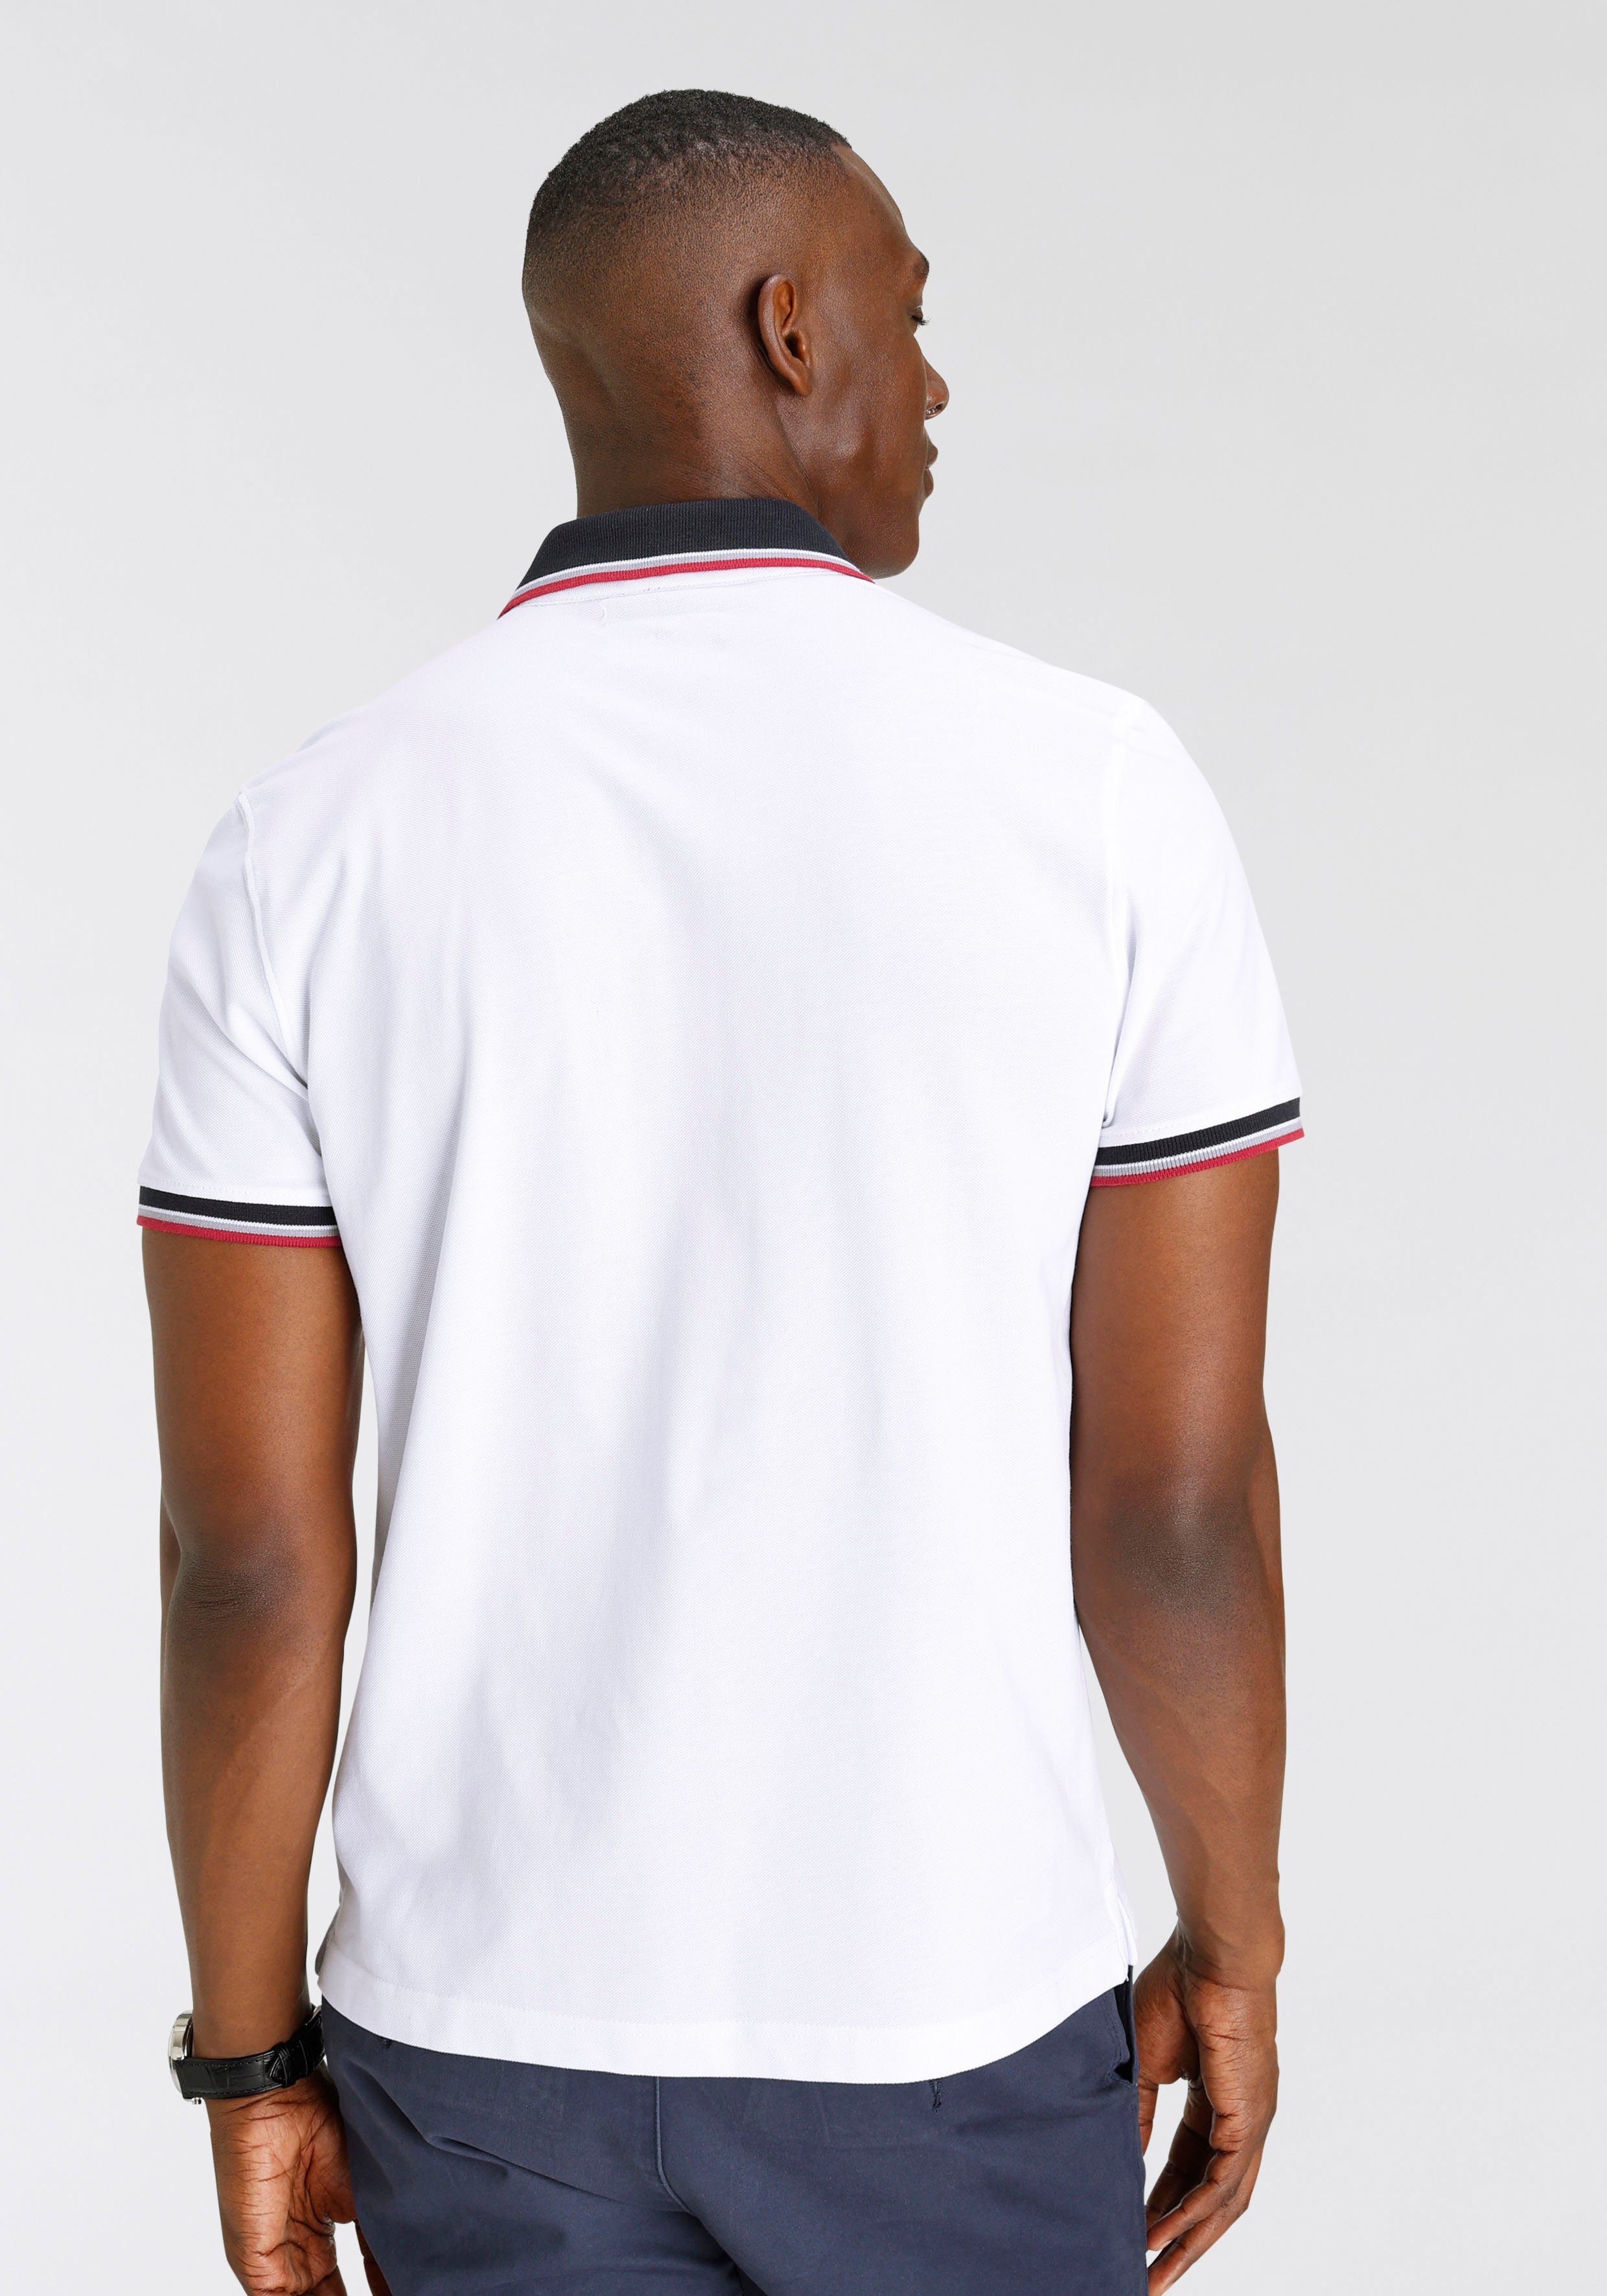 DELMAO Poloshirt mit Print-NEUE Streifen und MARKE